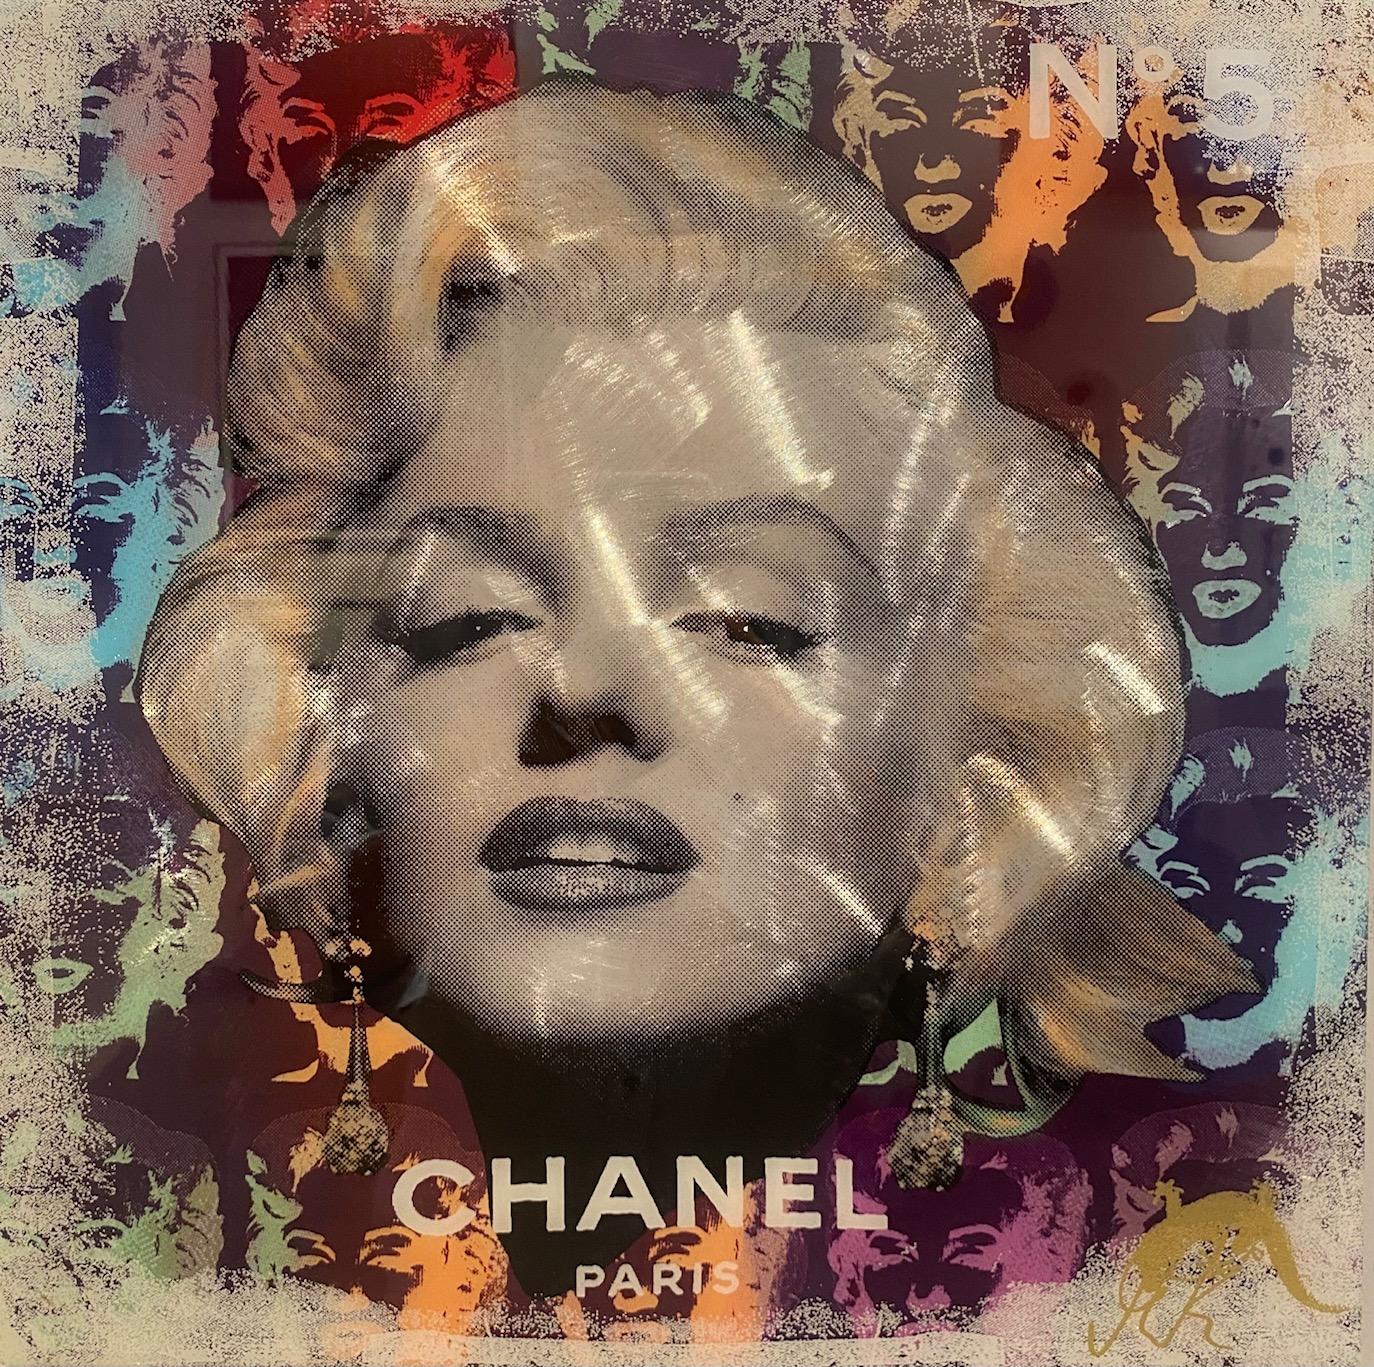 Chanel No. 5 - contemporary original pop art icon portrait of Marilyn Monroe